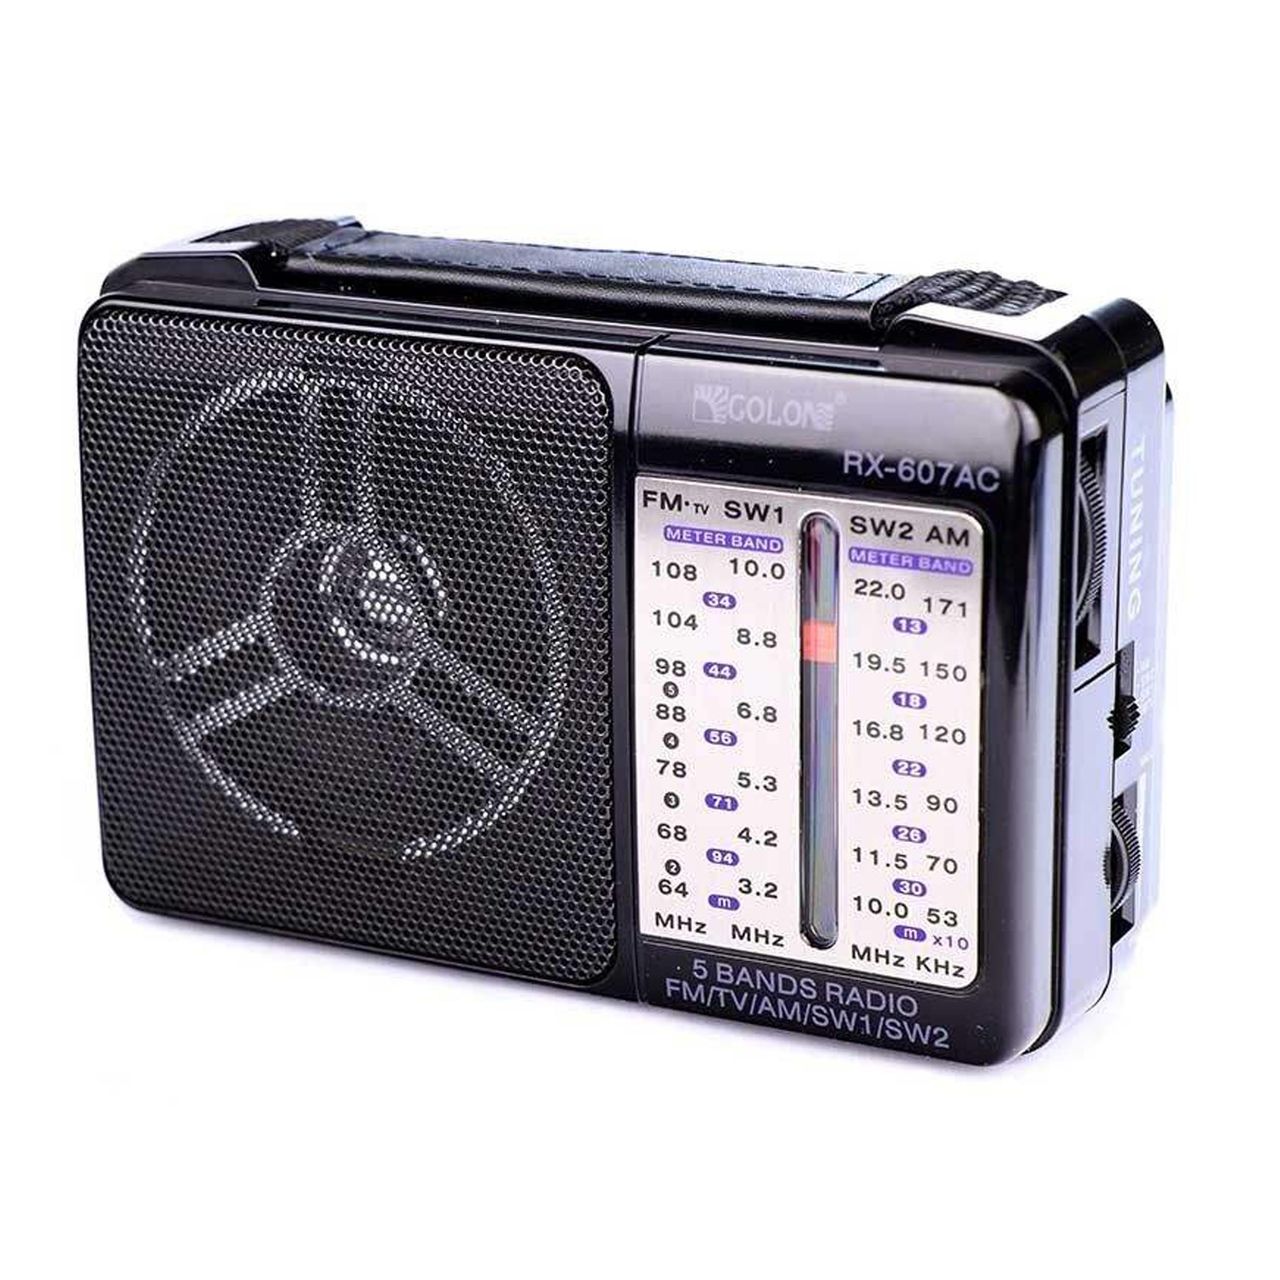 رادیو گولون مدل RX-607A